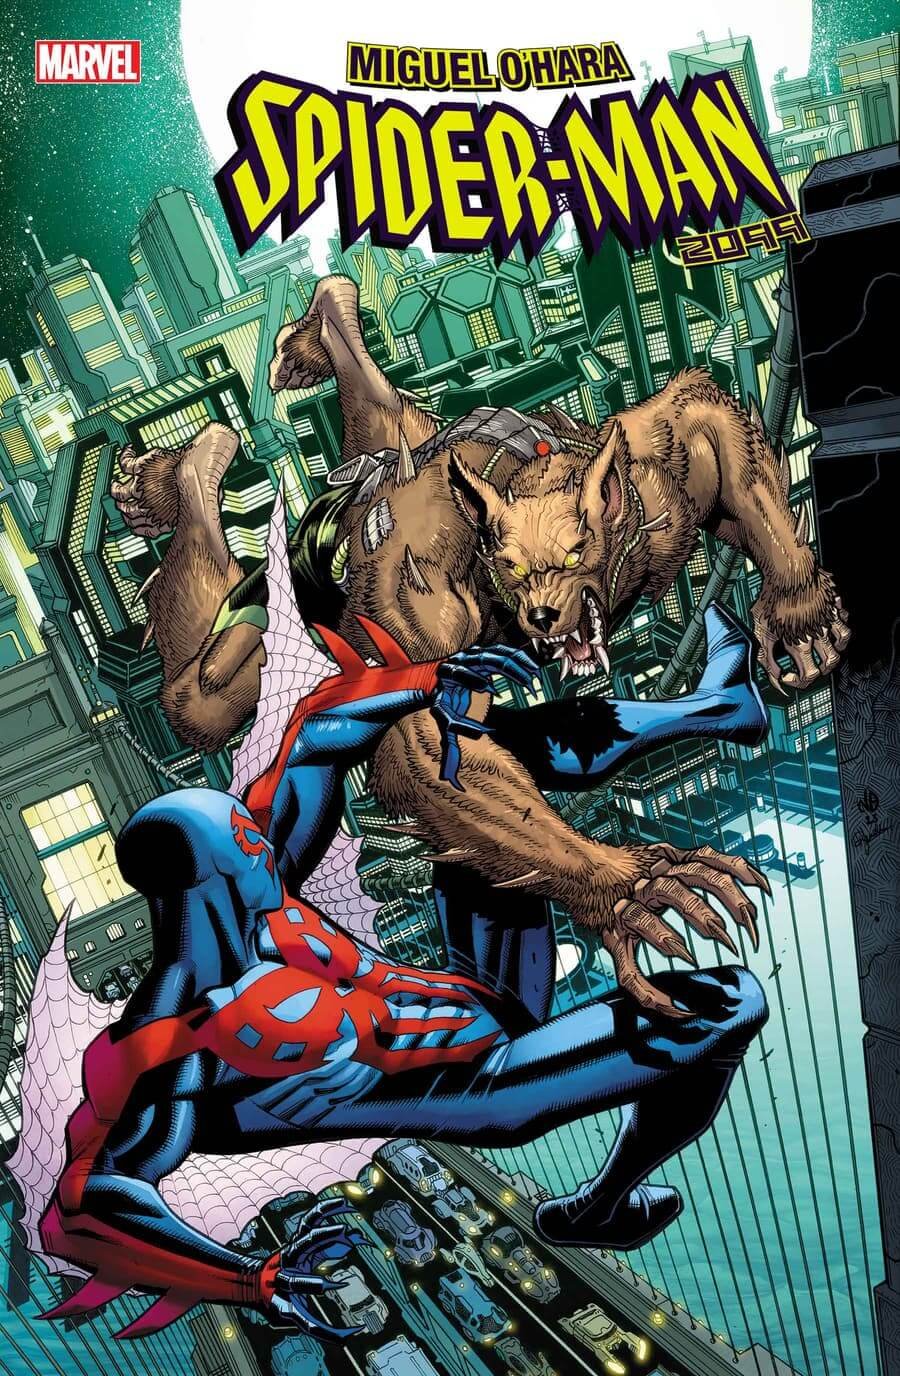 Cover di Miguel O'Hara: Spider-Man 2099 3, che omaggia il primo incontro tra Spidey e il personaggio horror Licantropus in Marvel Team-Up 12 del 1973